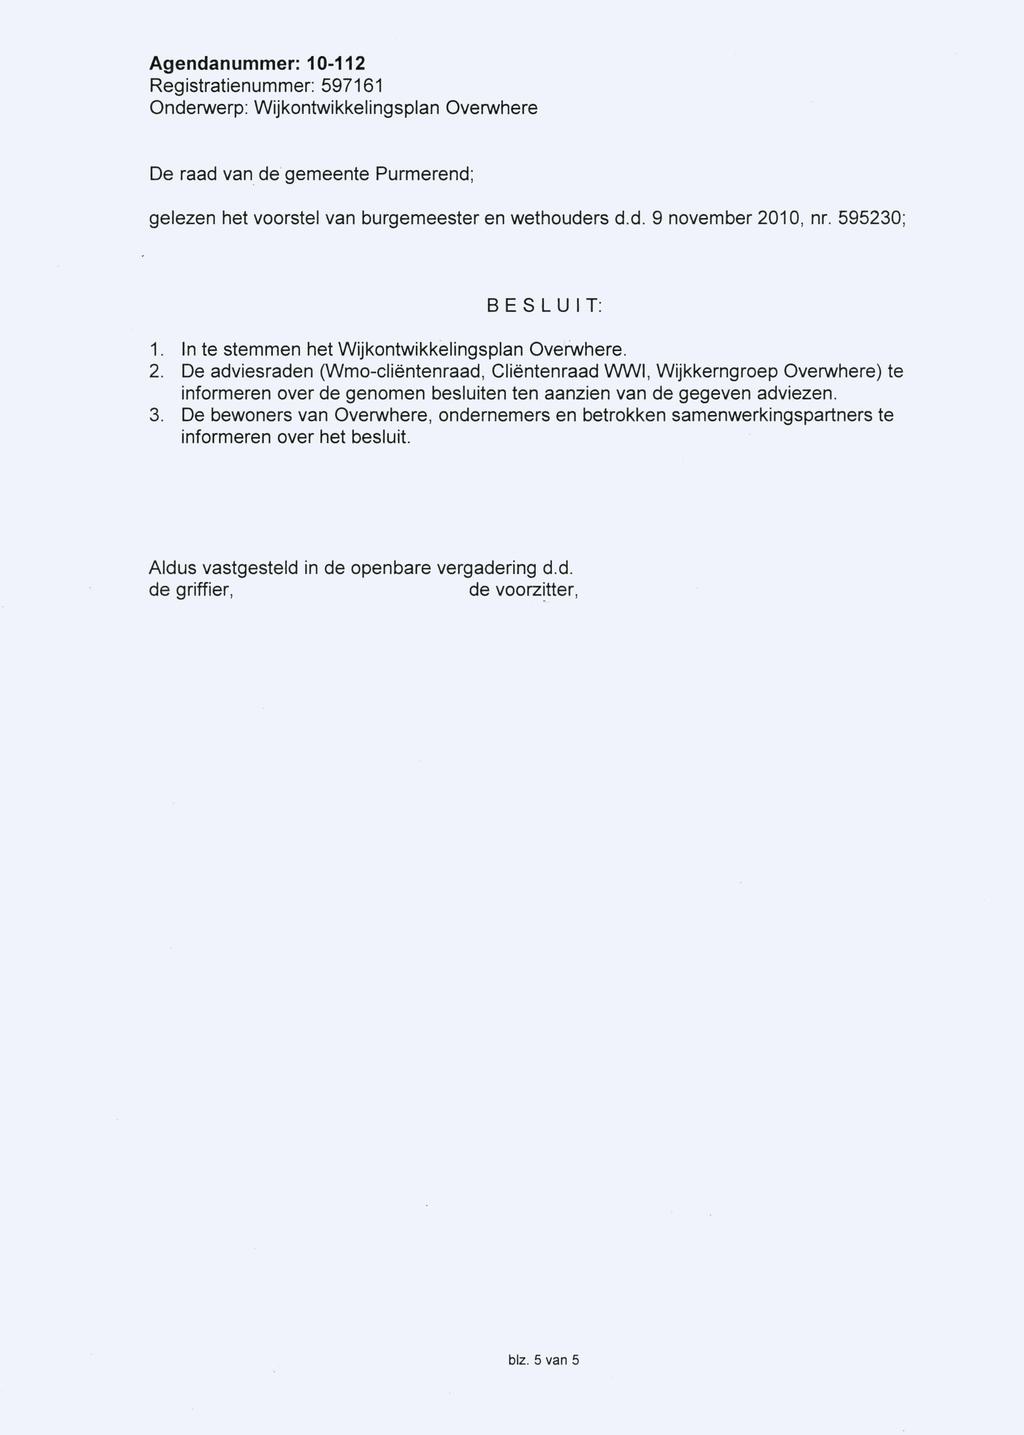 Agendanummer: 10-112 De raad van de gemeente Purmerend; gelezen het voorstel van burgemeester en wethouders d.d. 9 november 2010, nr. 595230; BESLUIT: 1.